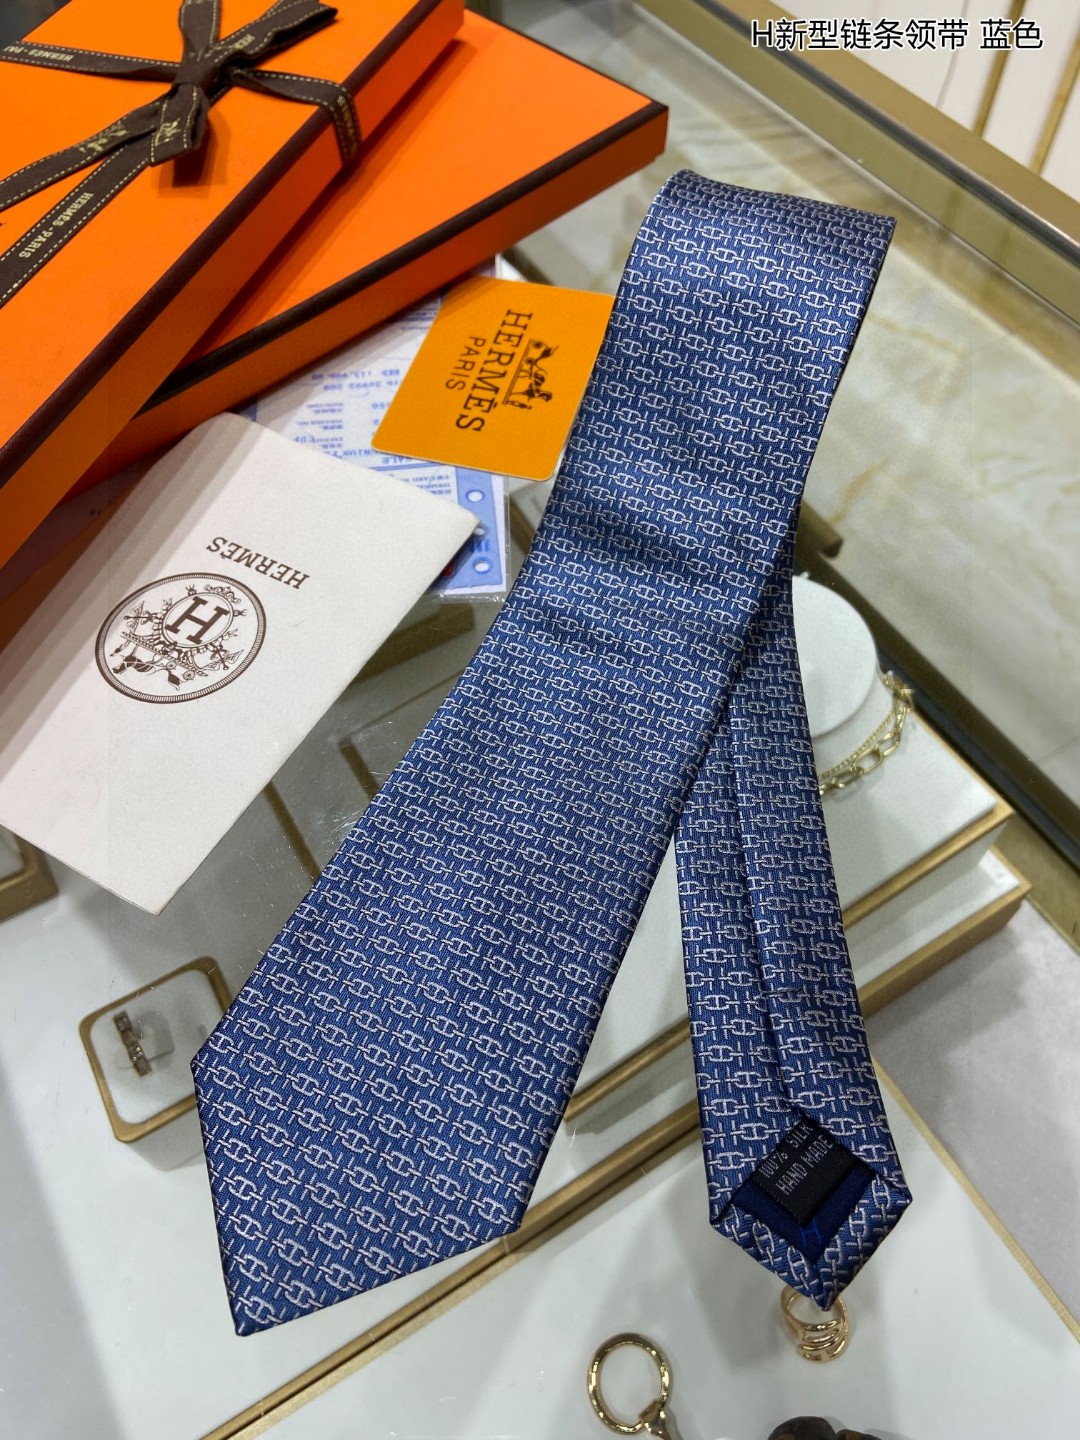 特价男士新款领带系列H新型链条领带稀有H家每年都有一千条不同印花的领带面世从最初的多以几何图案表现骑术活